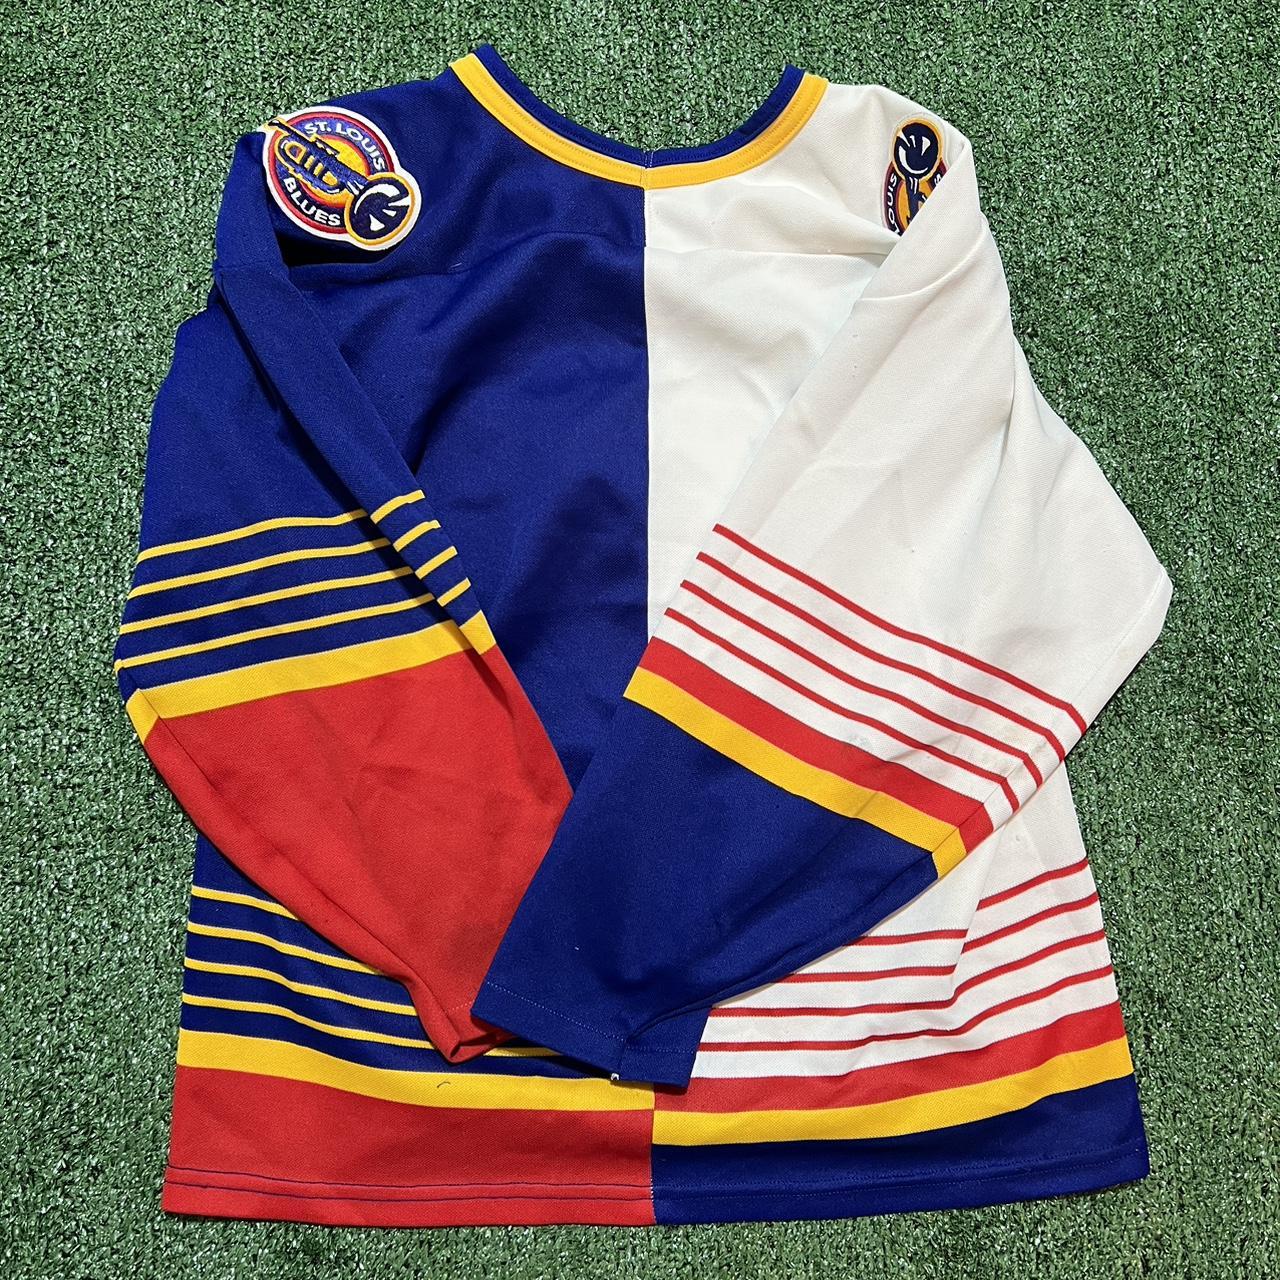 St. Louis Blues 90s vintage jersey. - Depop